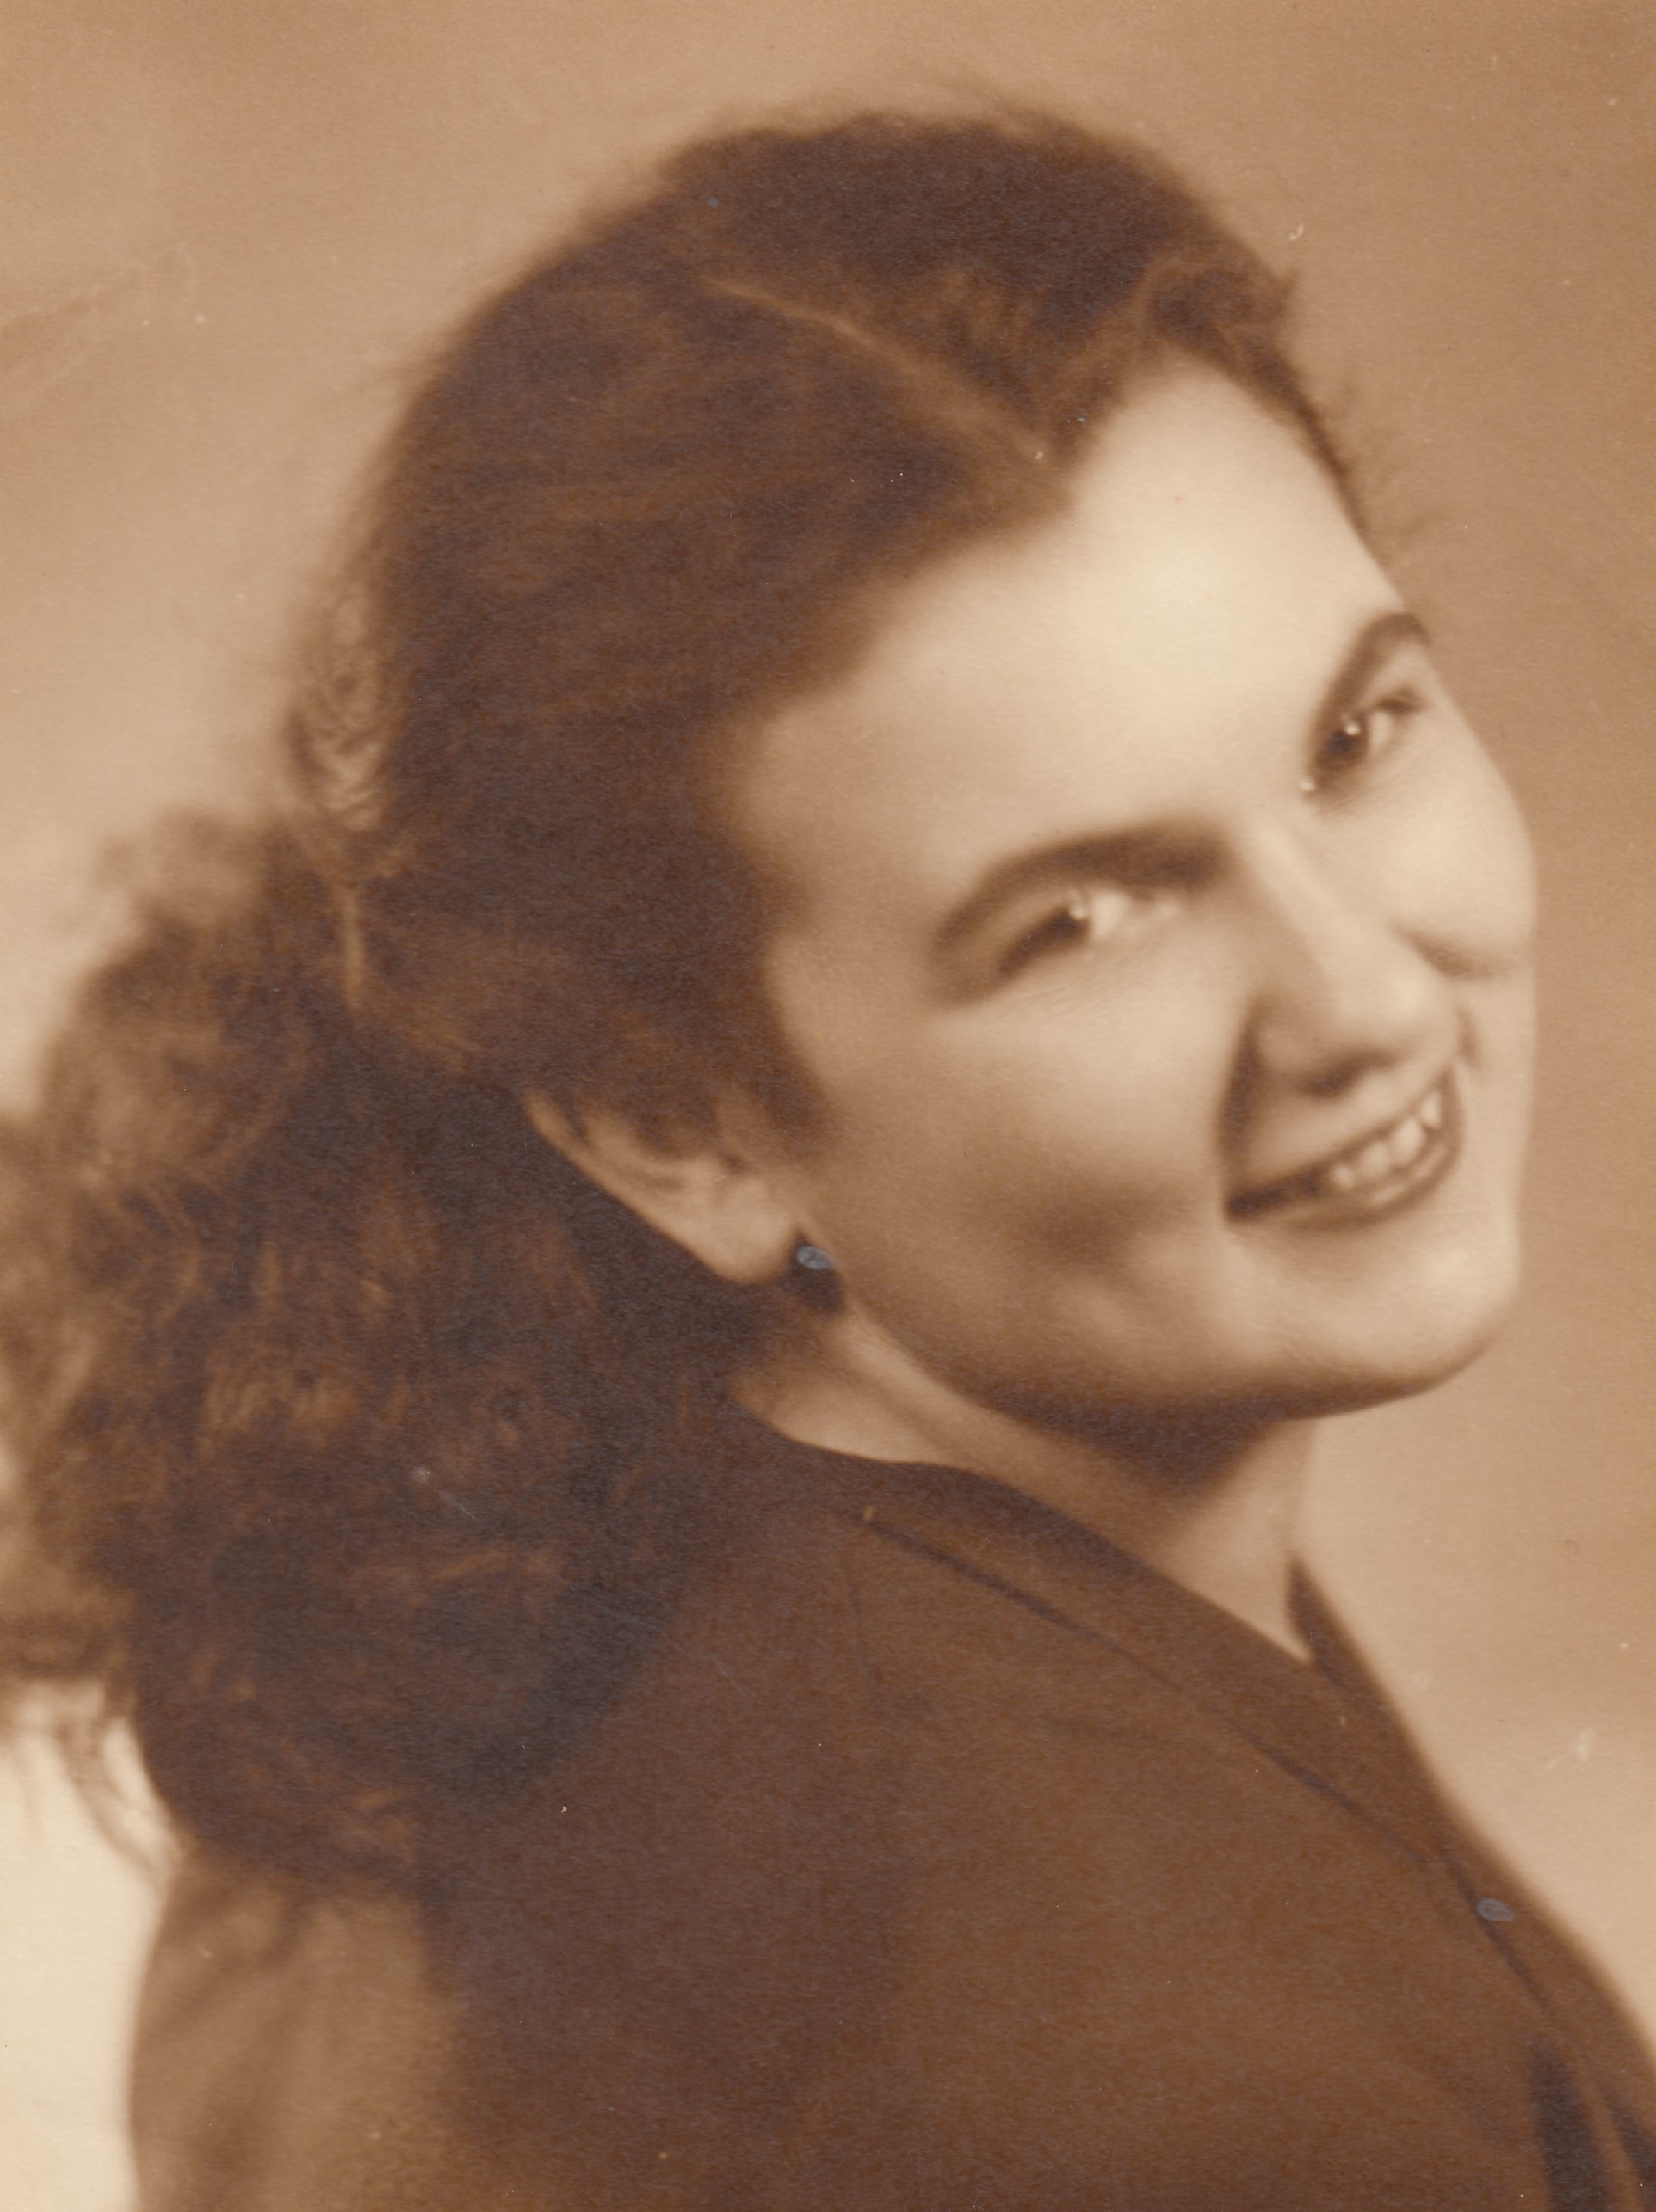 Nineteen-year-old Erna Podhorská, née Dejmalová, in 1949